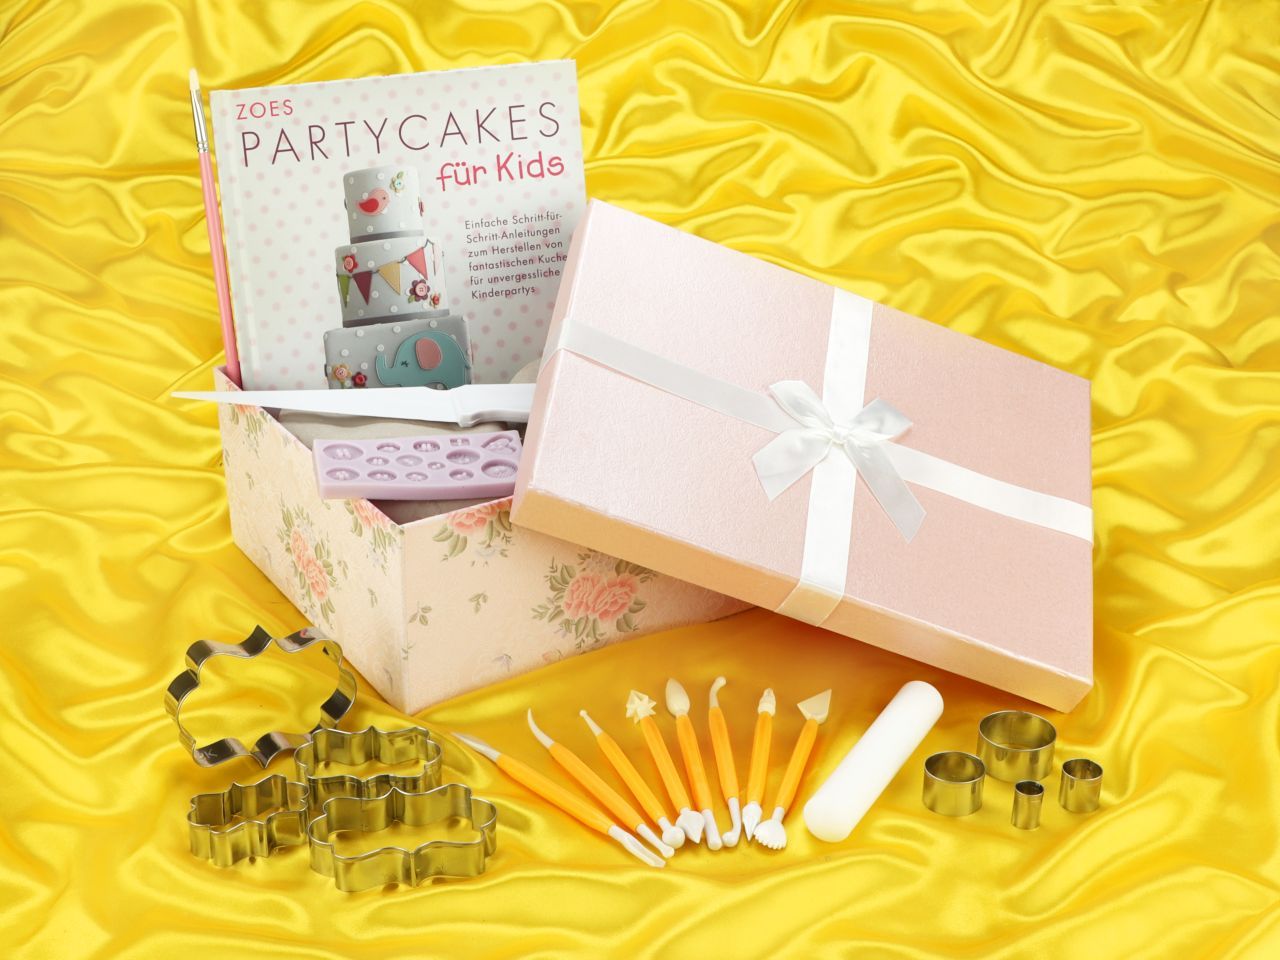 Geschenkset Zoes Partycakes für Kids von Cake-Masters